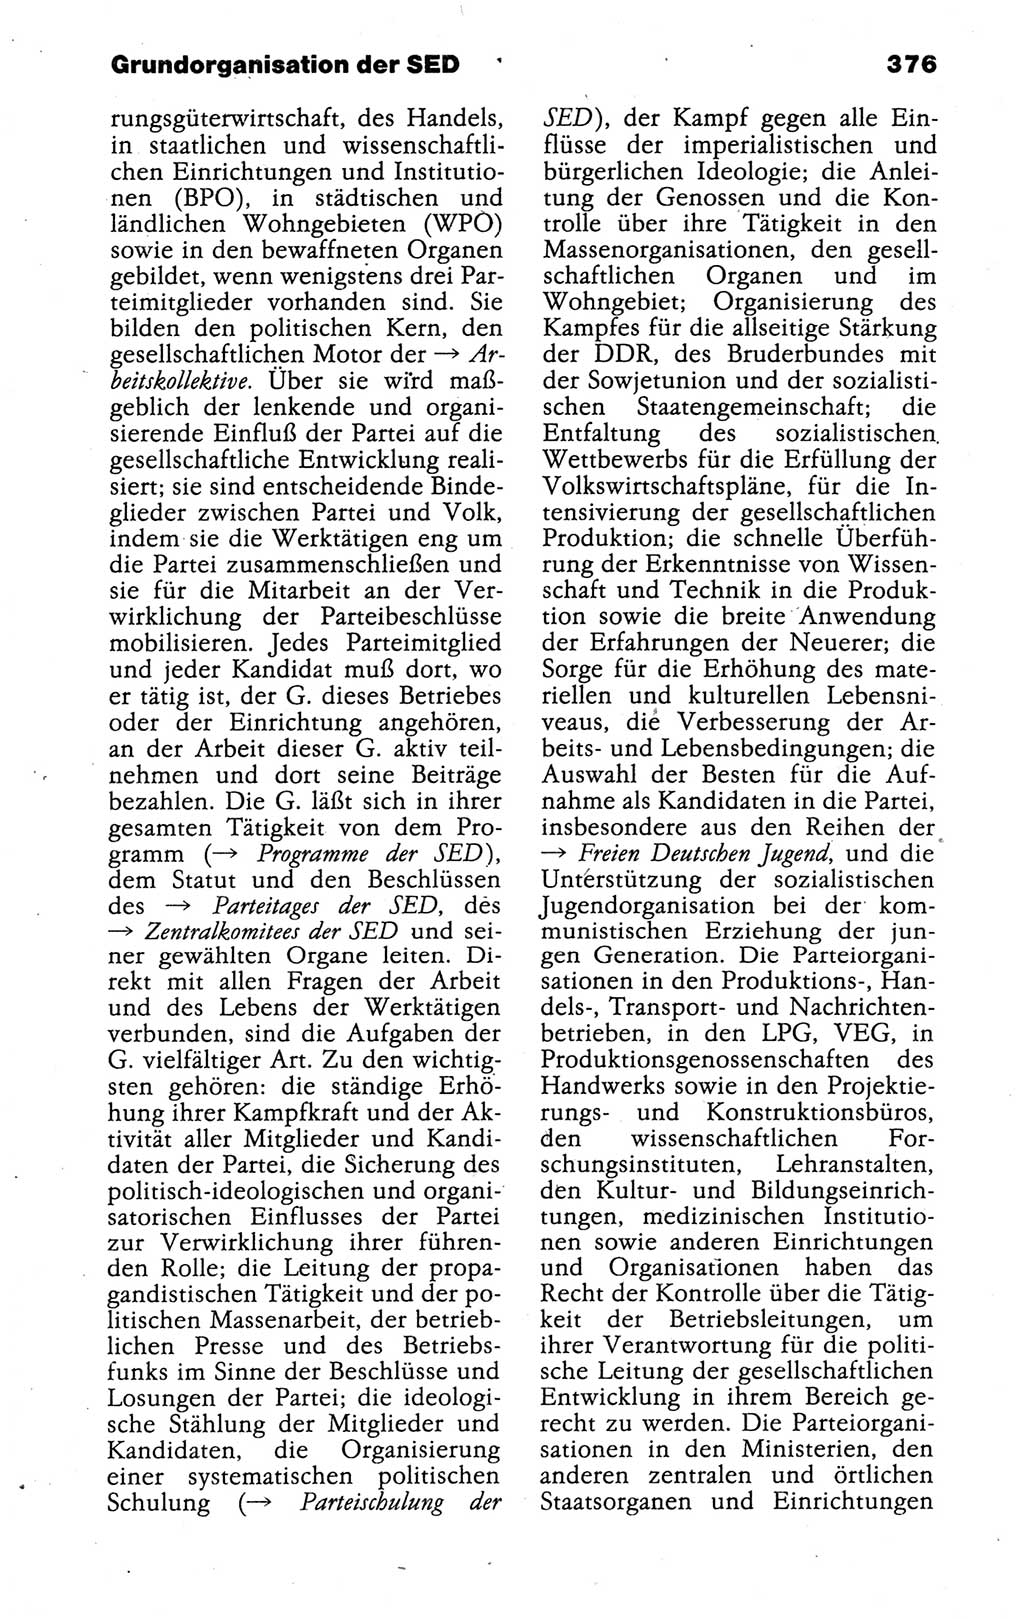 Kleines politisches Wörterbuch [Deutsche Demokratische Republik (DDR)] 1988, Seite 376 (Kl. pol. Wb. DDR 1988, S. 376)